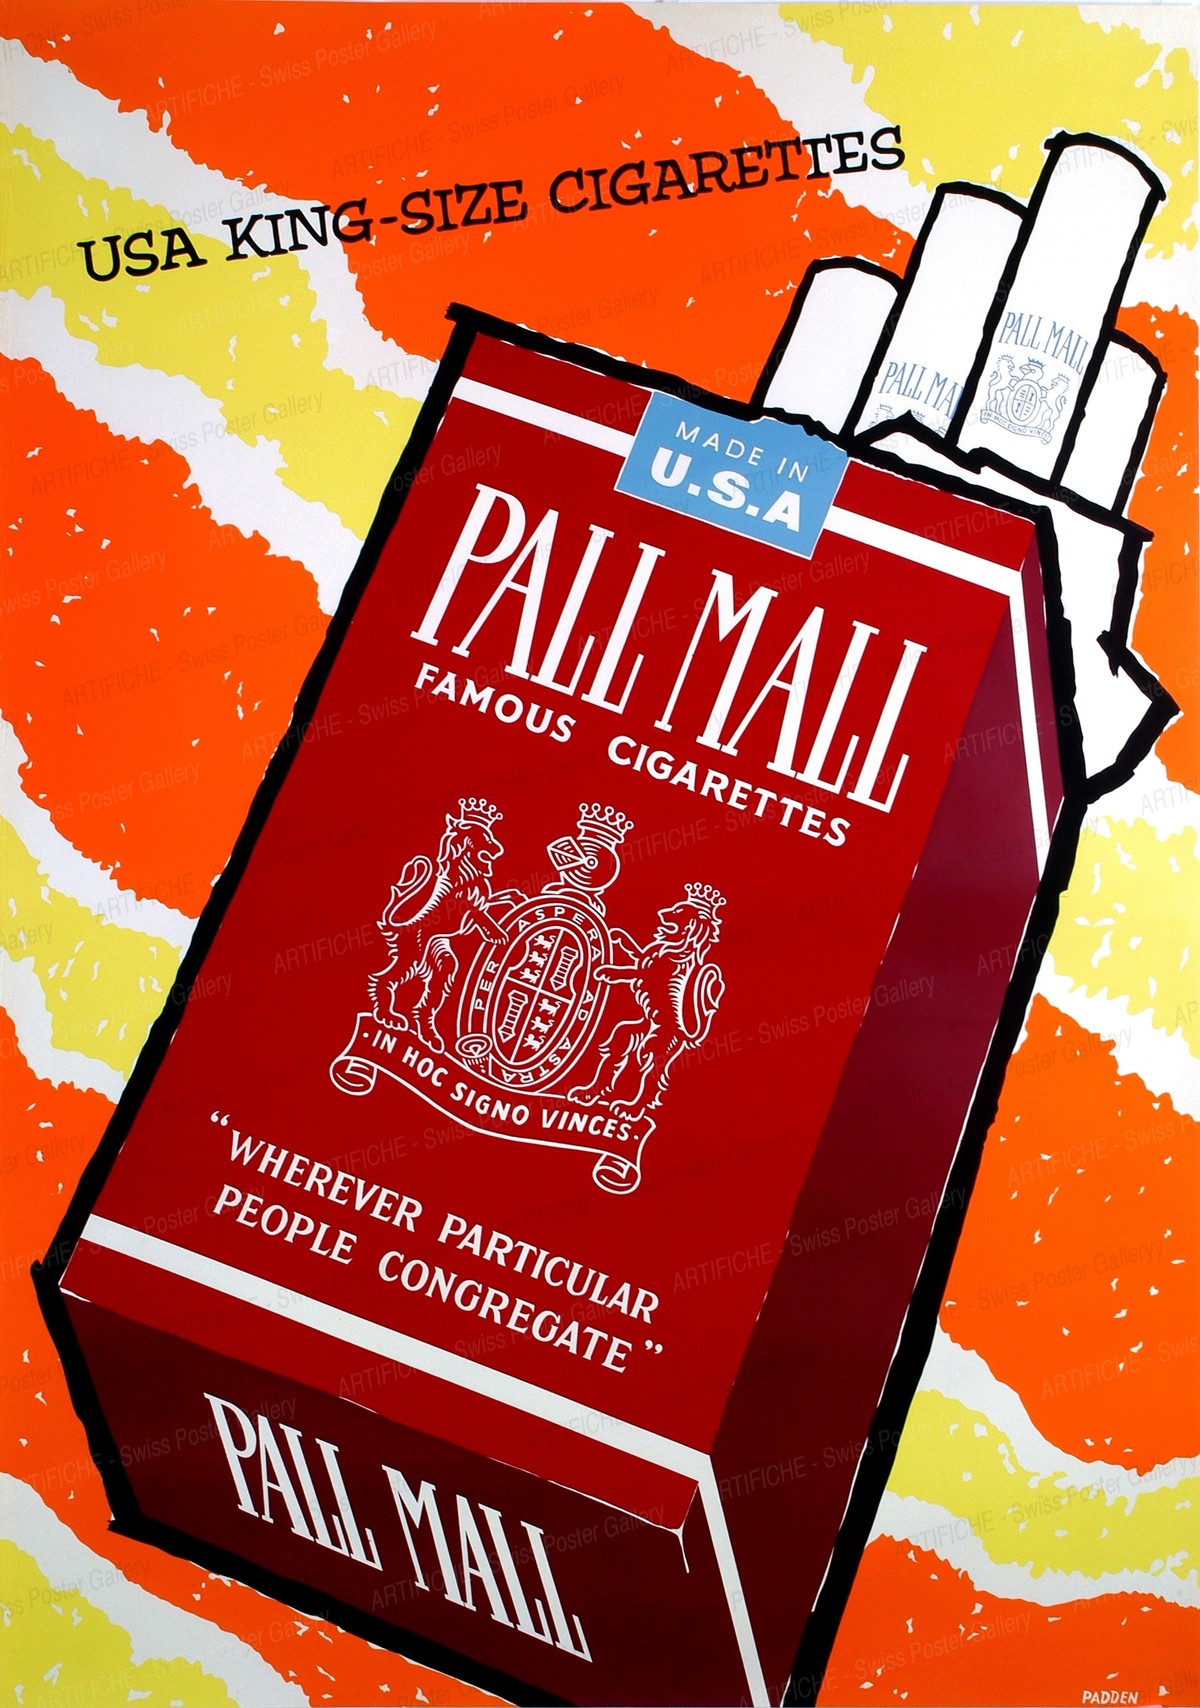 Pall Mall Cigarettes – USA King Size, Daphne Padden